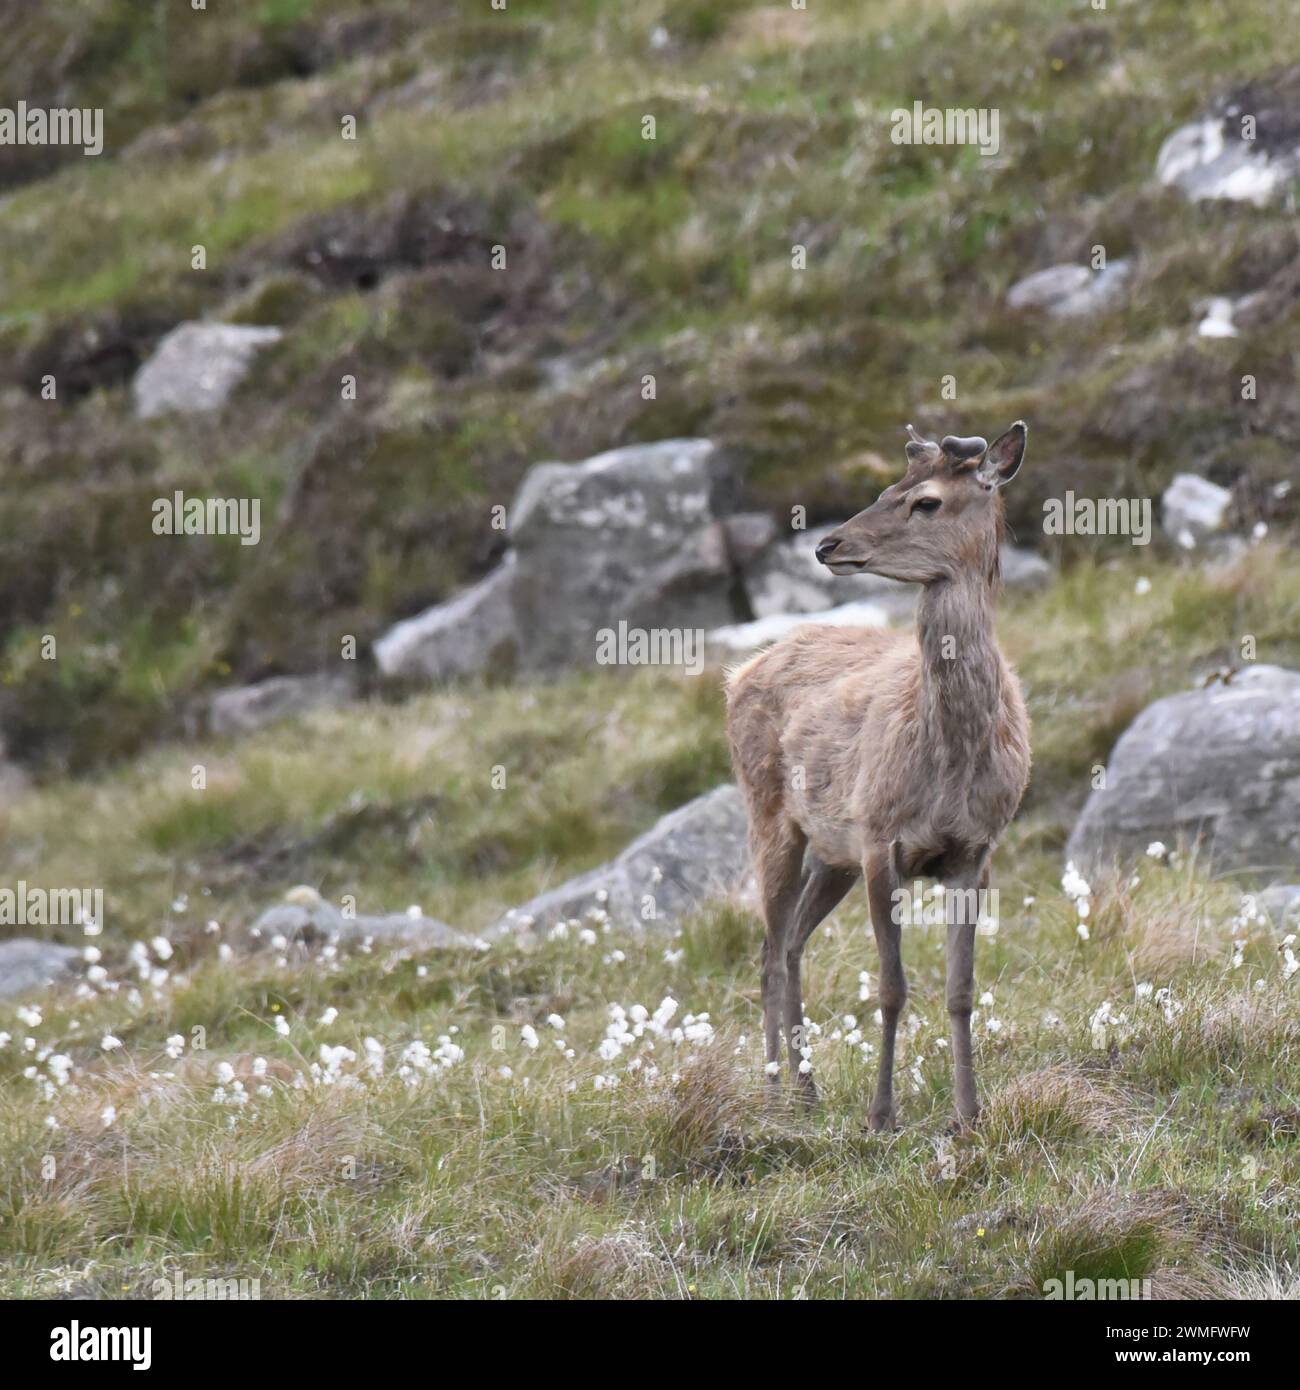 Giovane cervo rosso scozzese con palchi in velluto Foto Stock